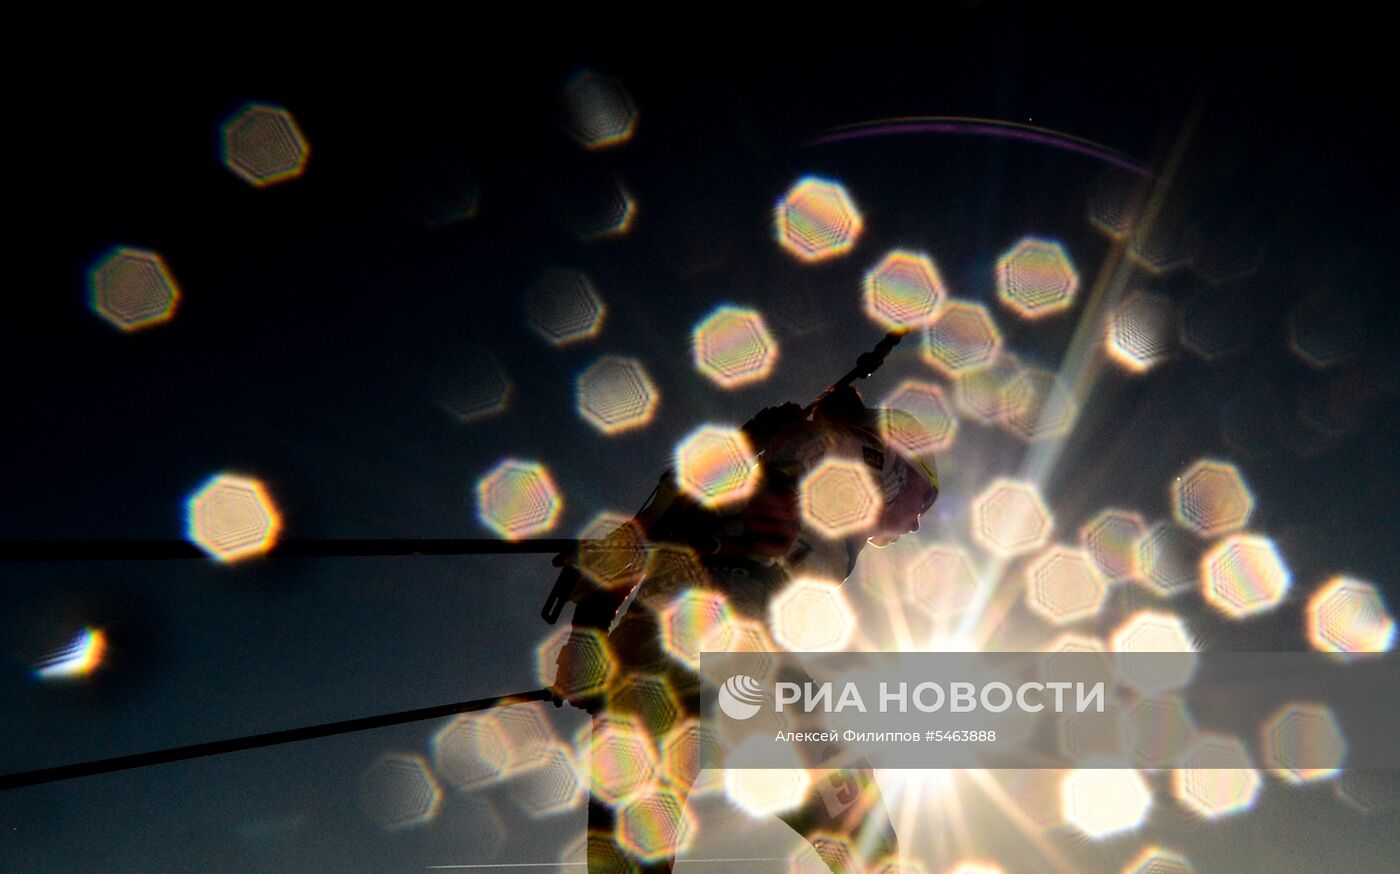 Фотокорреспондент МИА "Россия сегодня" А. Филиппов победил на фотоконкурсе "Istanbul Photo Awards" 